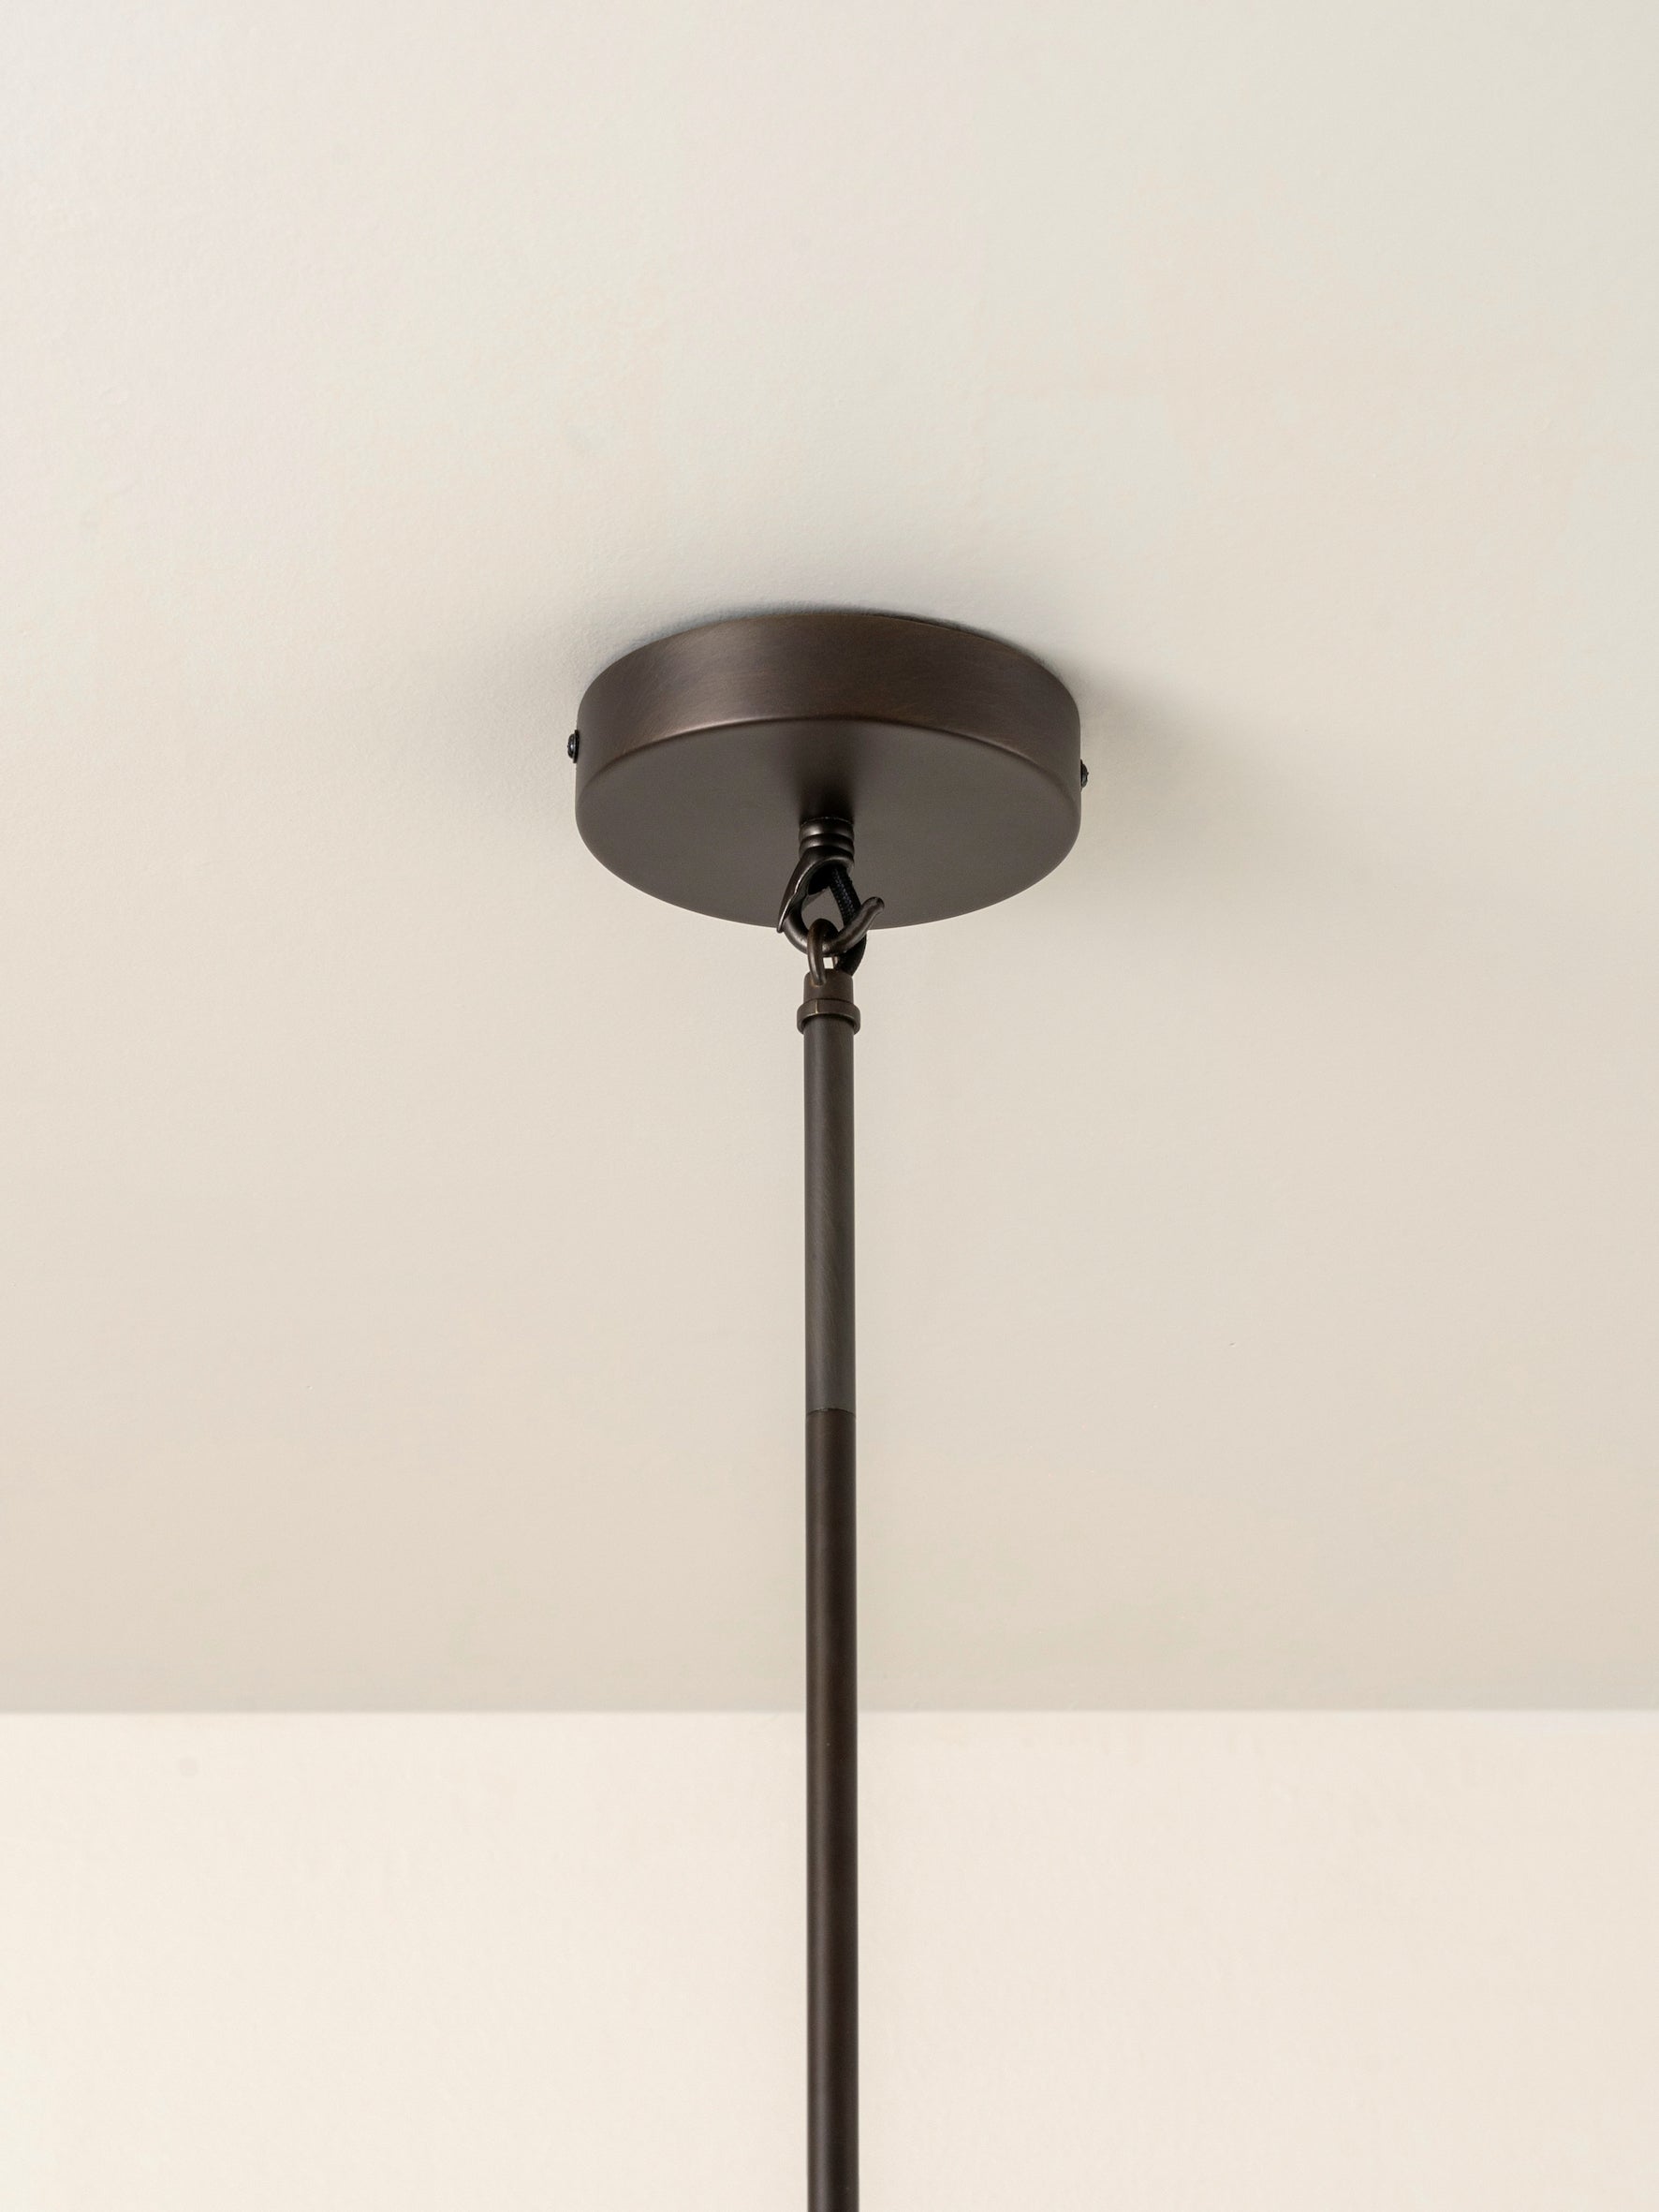 Renwick - 5 light linen and bronze pendant | Ceiling Light | Lights & Lamps Inc | USA